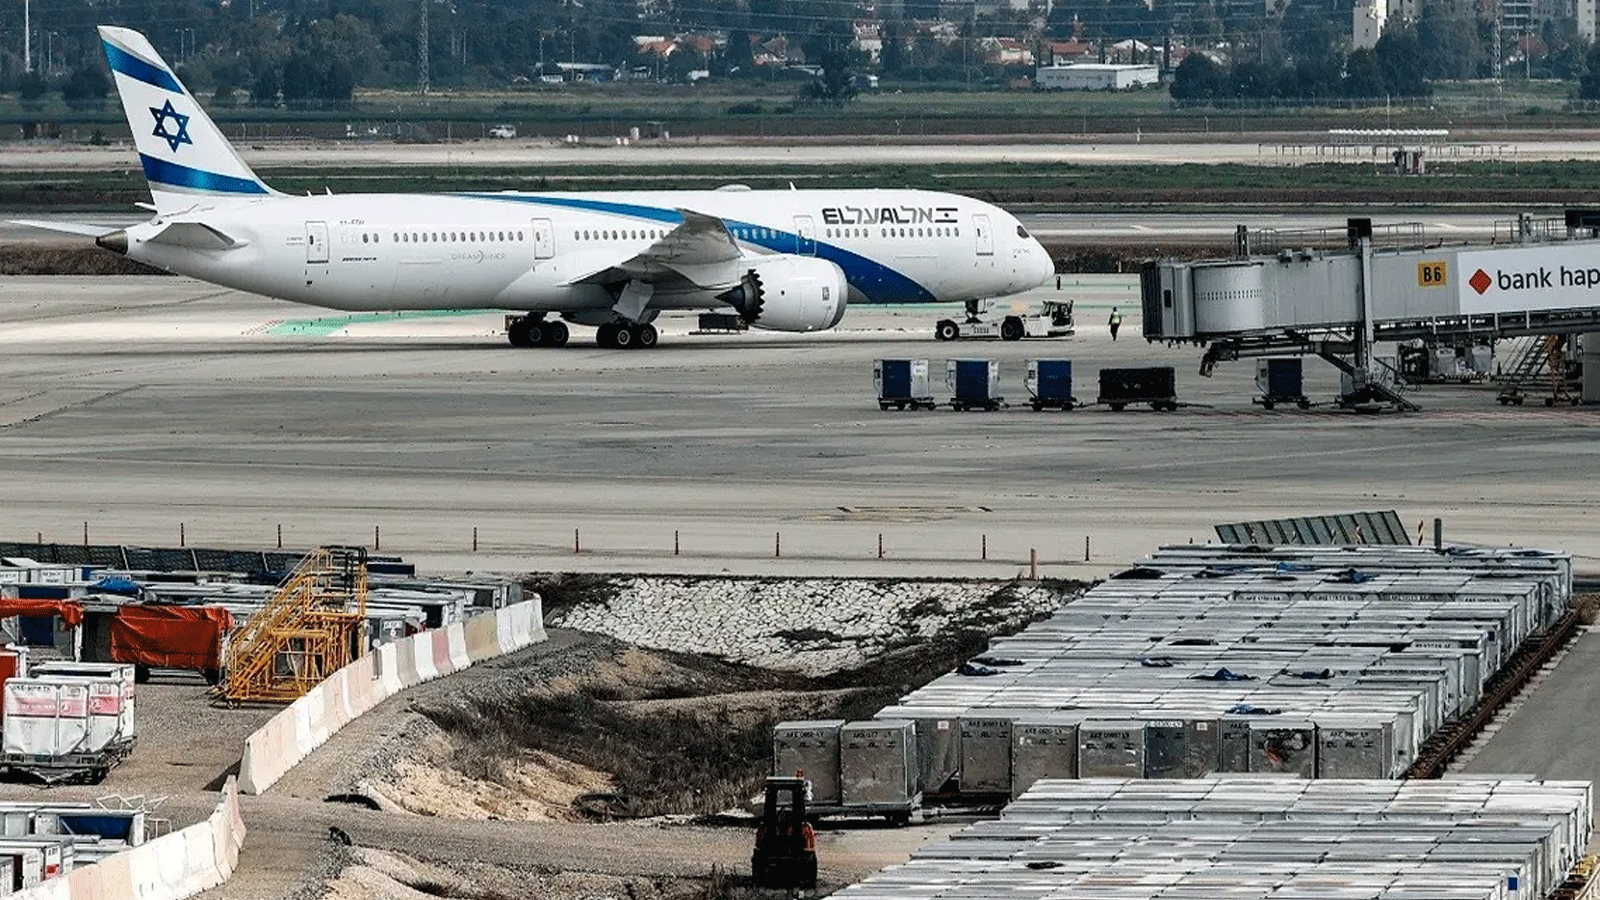 صورة التُقِطَت في 7 آذار\ مارس 2021 لطائرة تابعة لشركة طيران إسرائيلية تابعة لشركة العال، وهي تسير في طريقها قبل إقلاعها من مطار بن غوريون الإسرائيلي بالقرب من تل أبيب.